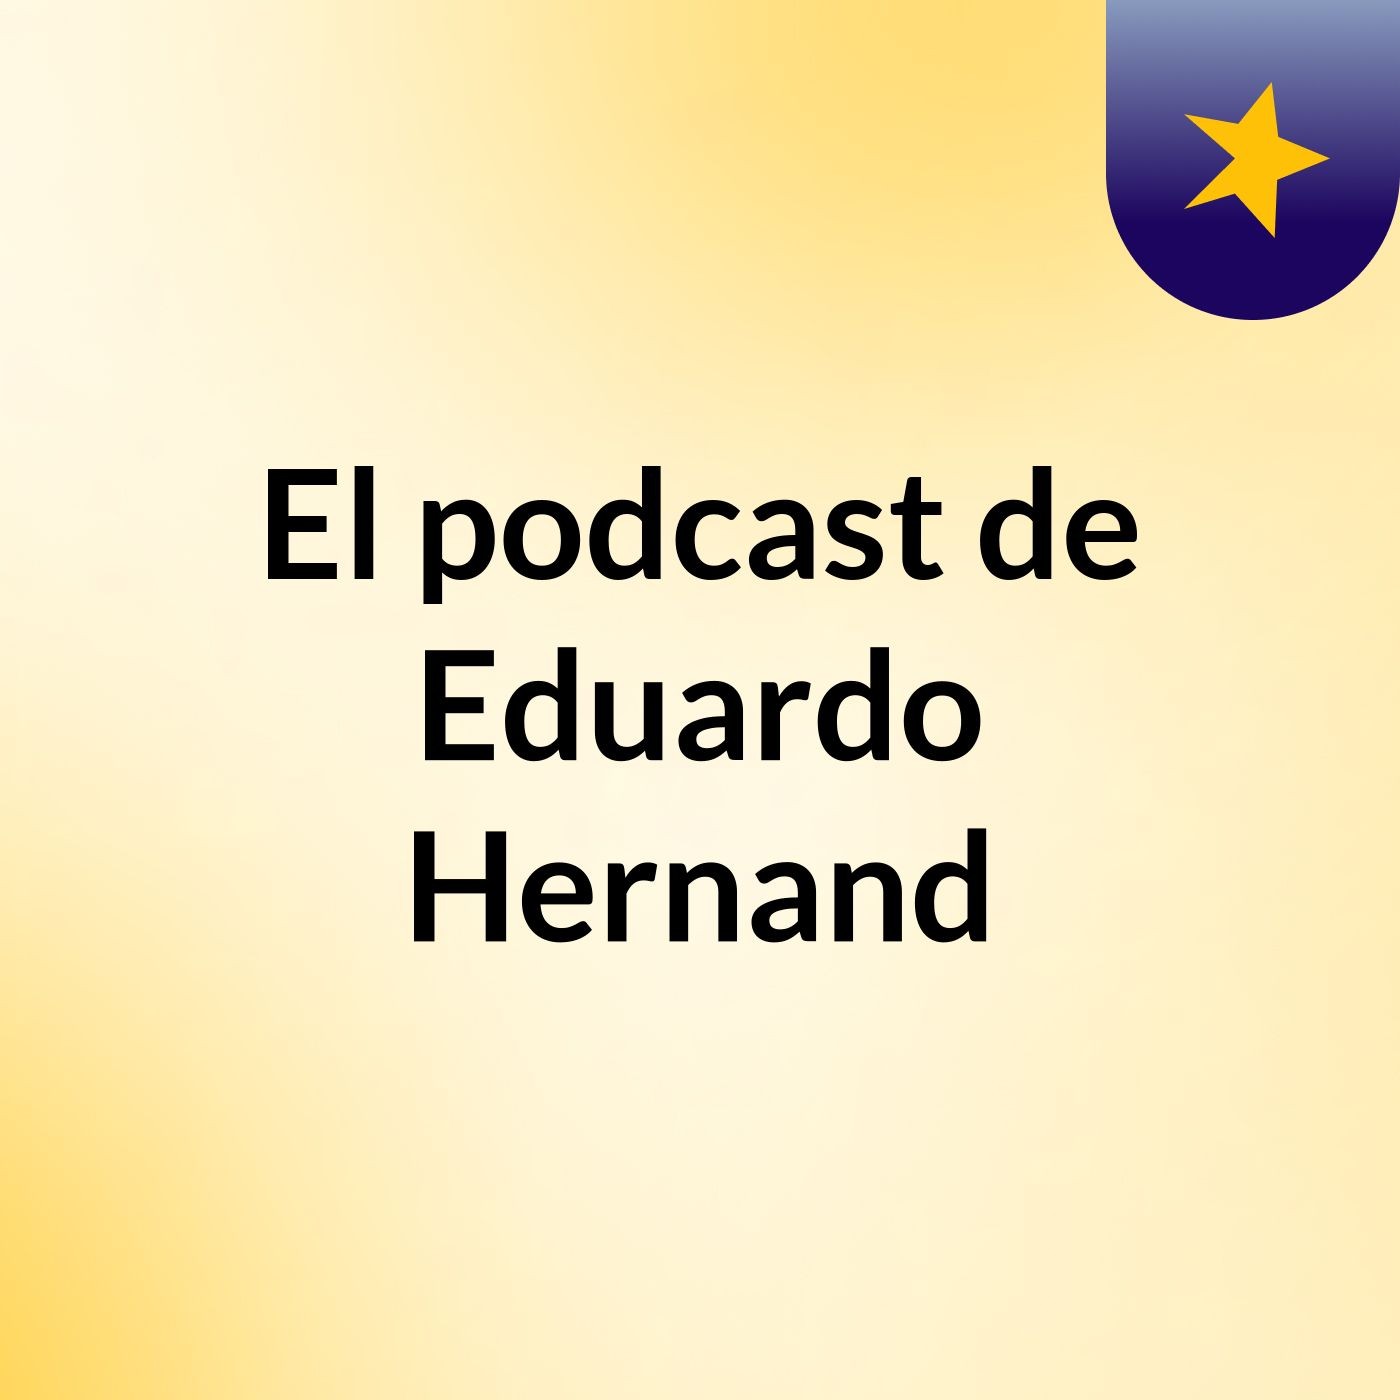 El podcast de Eduardo Hernand